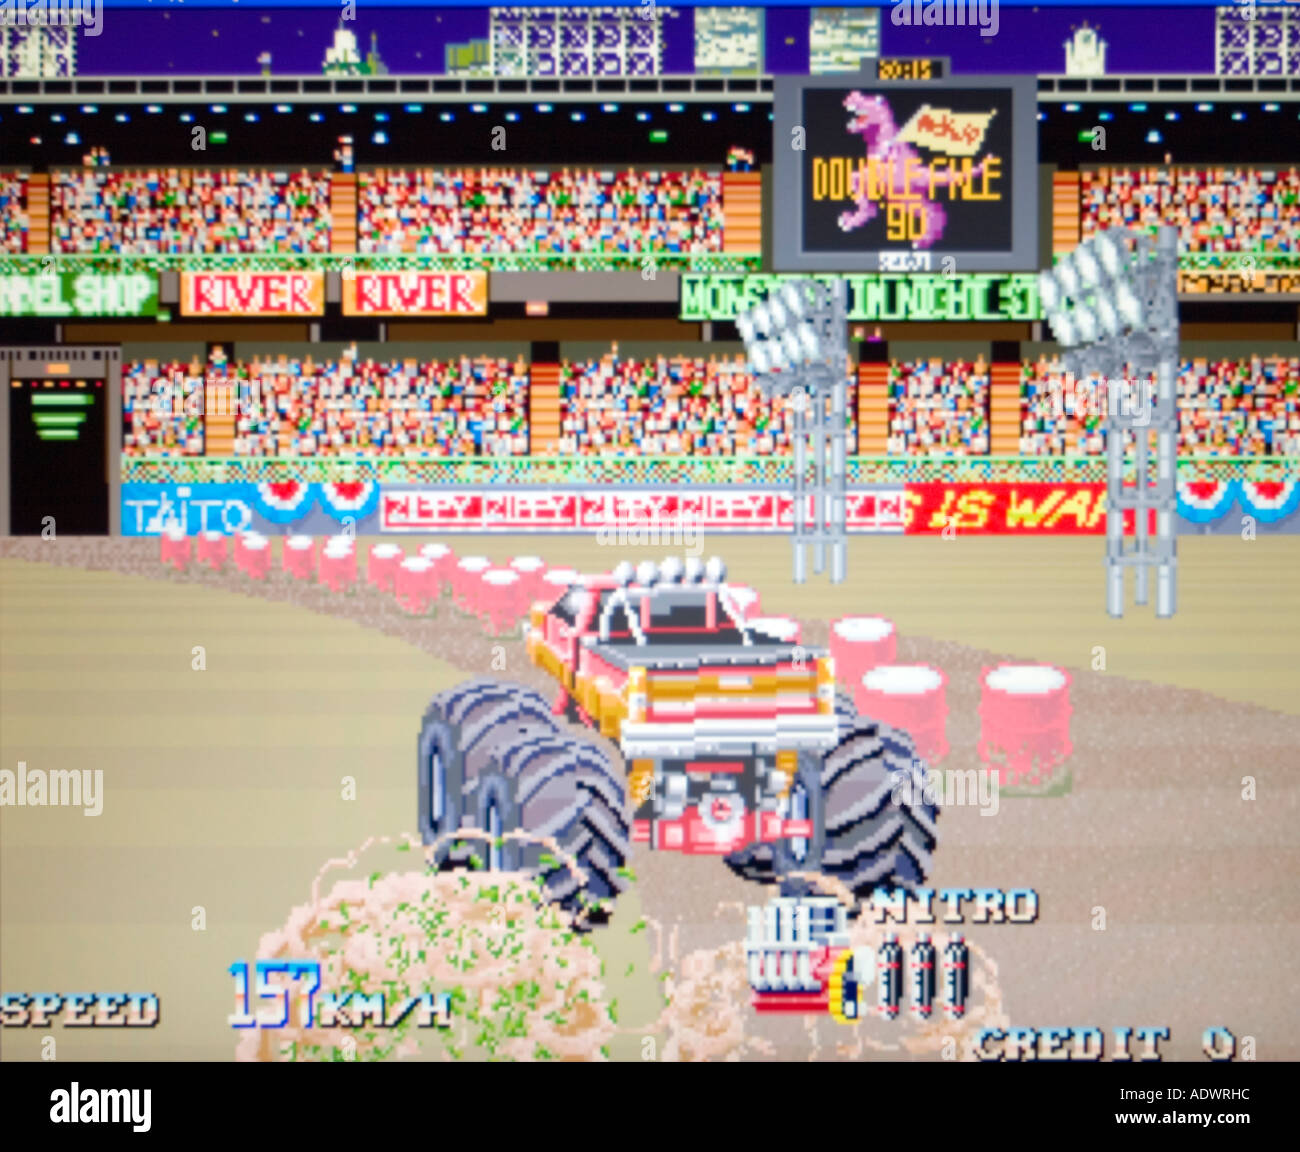 Assale doppio Taito 1991 vintage videogioco arcade screenshot - solo uso editoriale Foto Stock